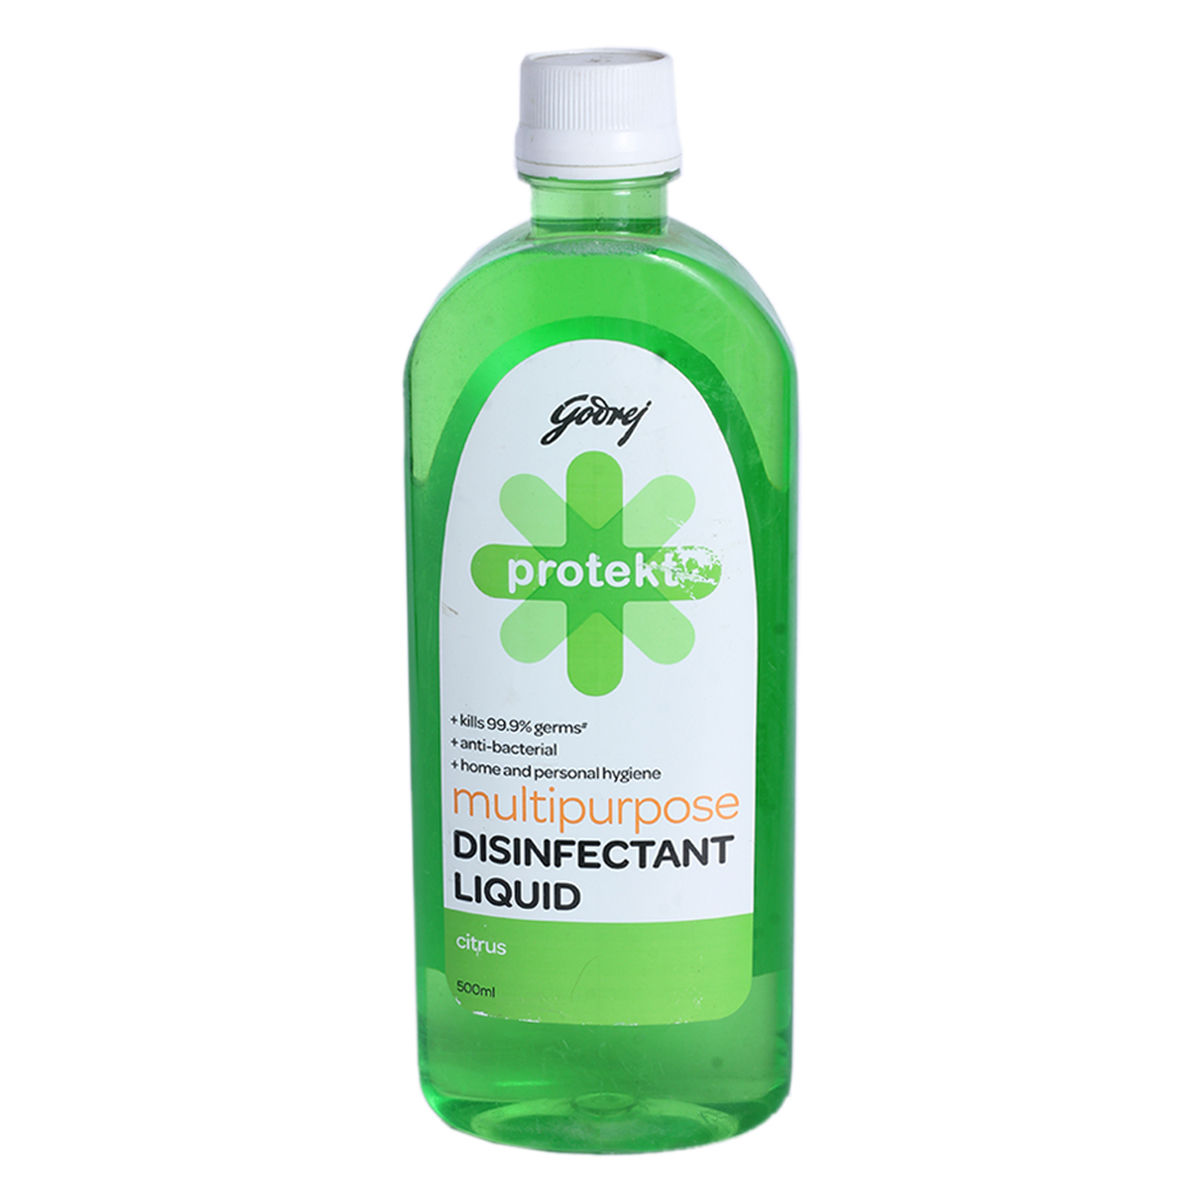 Buy Godrej Protekt Multi Purpose Disinfectant Citrus Liquid, 500 ml Online